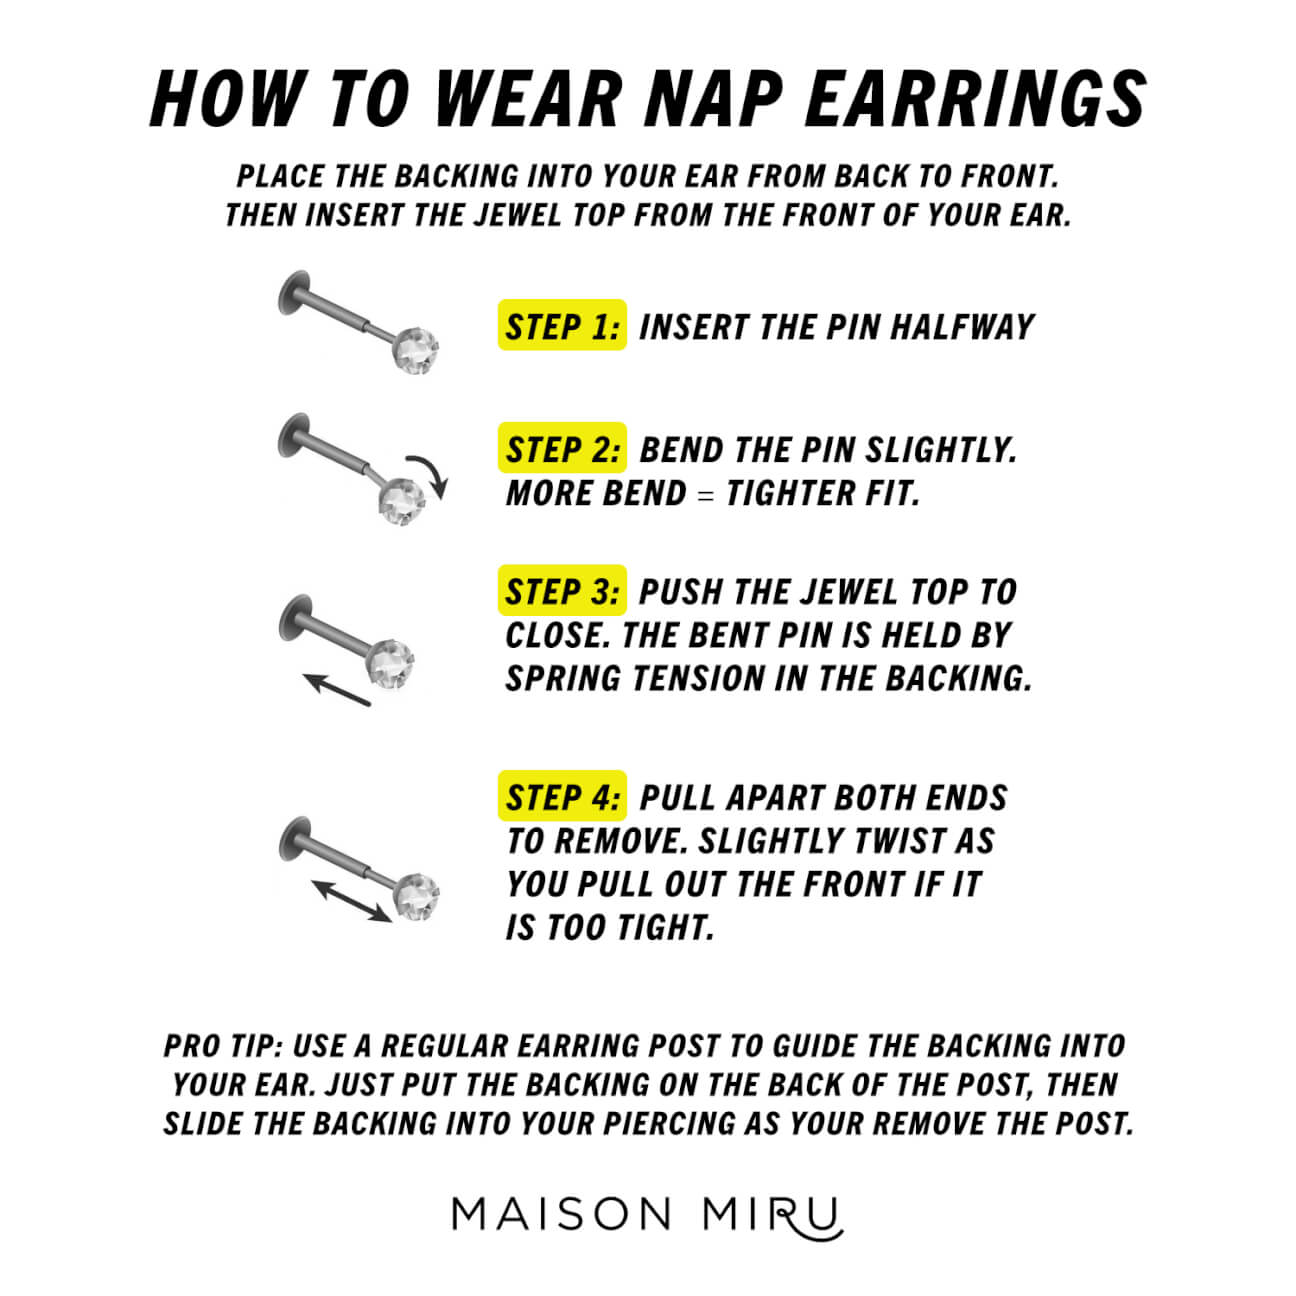 How to Wear the Evil Eye Nap Earrings